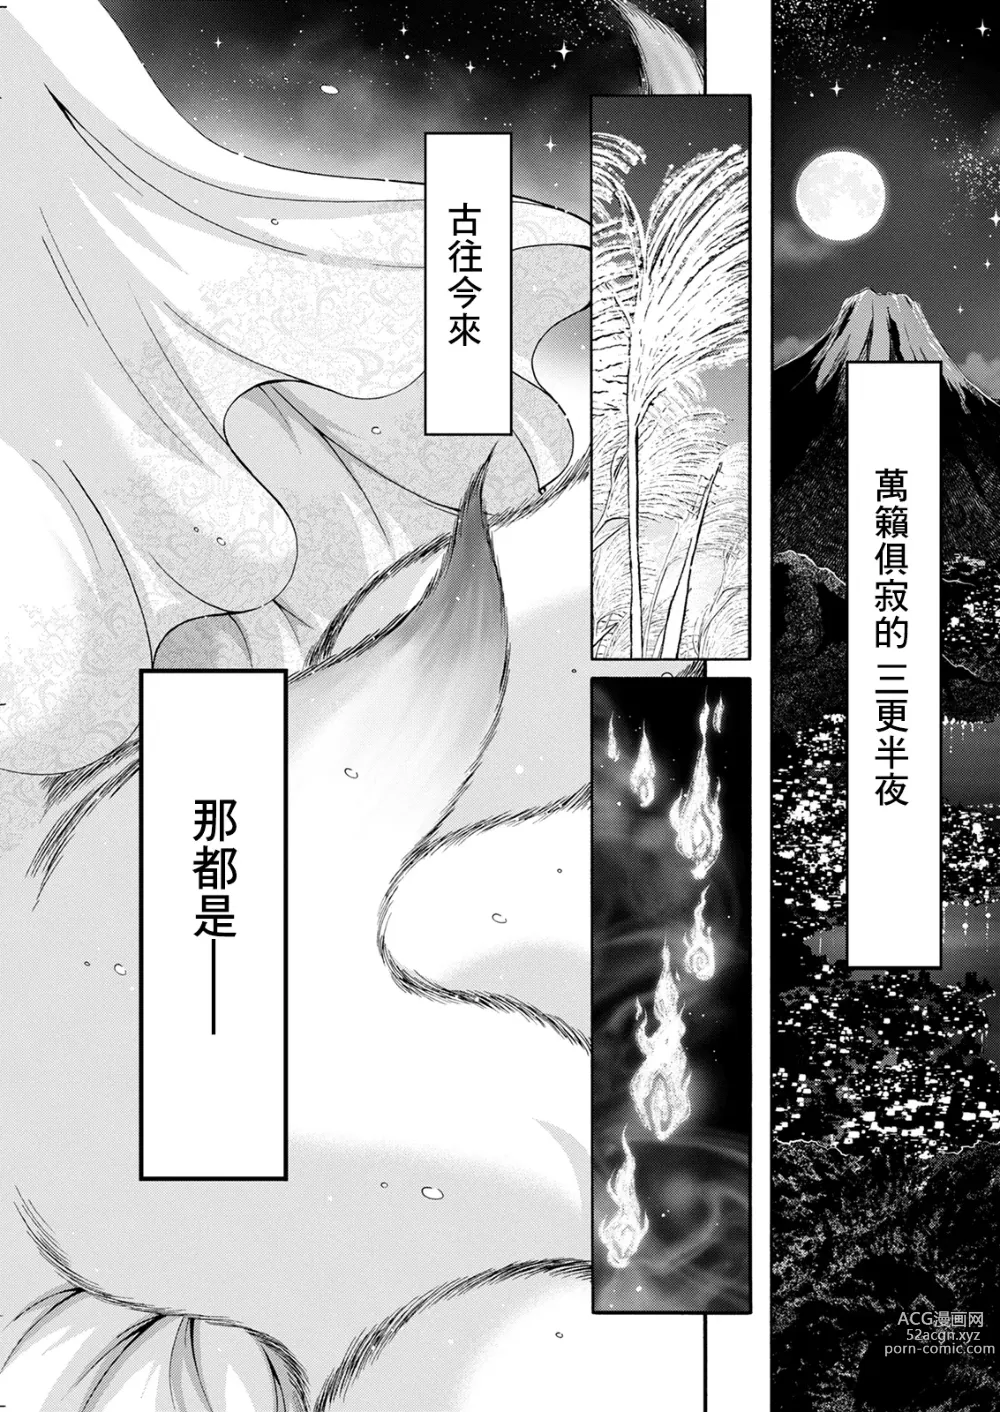 Page 1 of manga Youkai Ecchicchi Saishuuwa